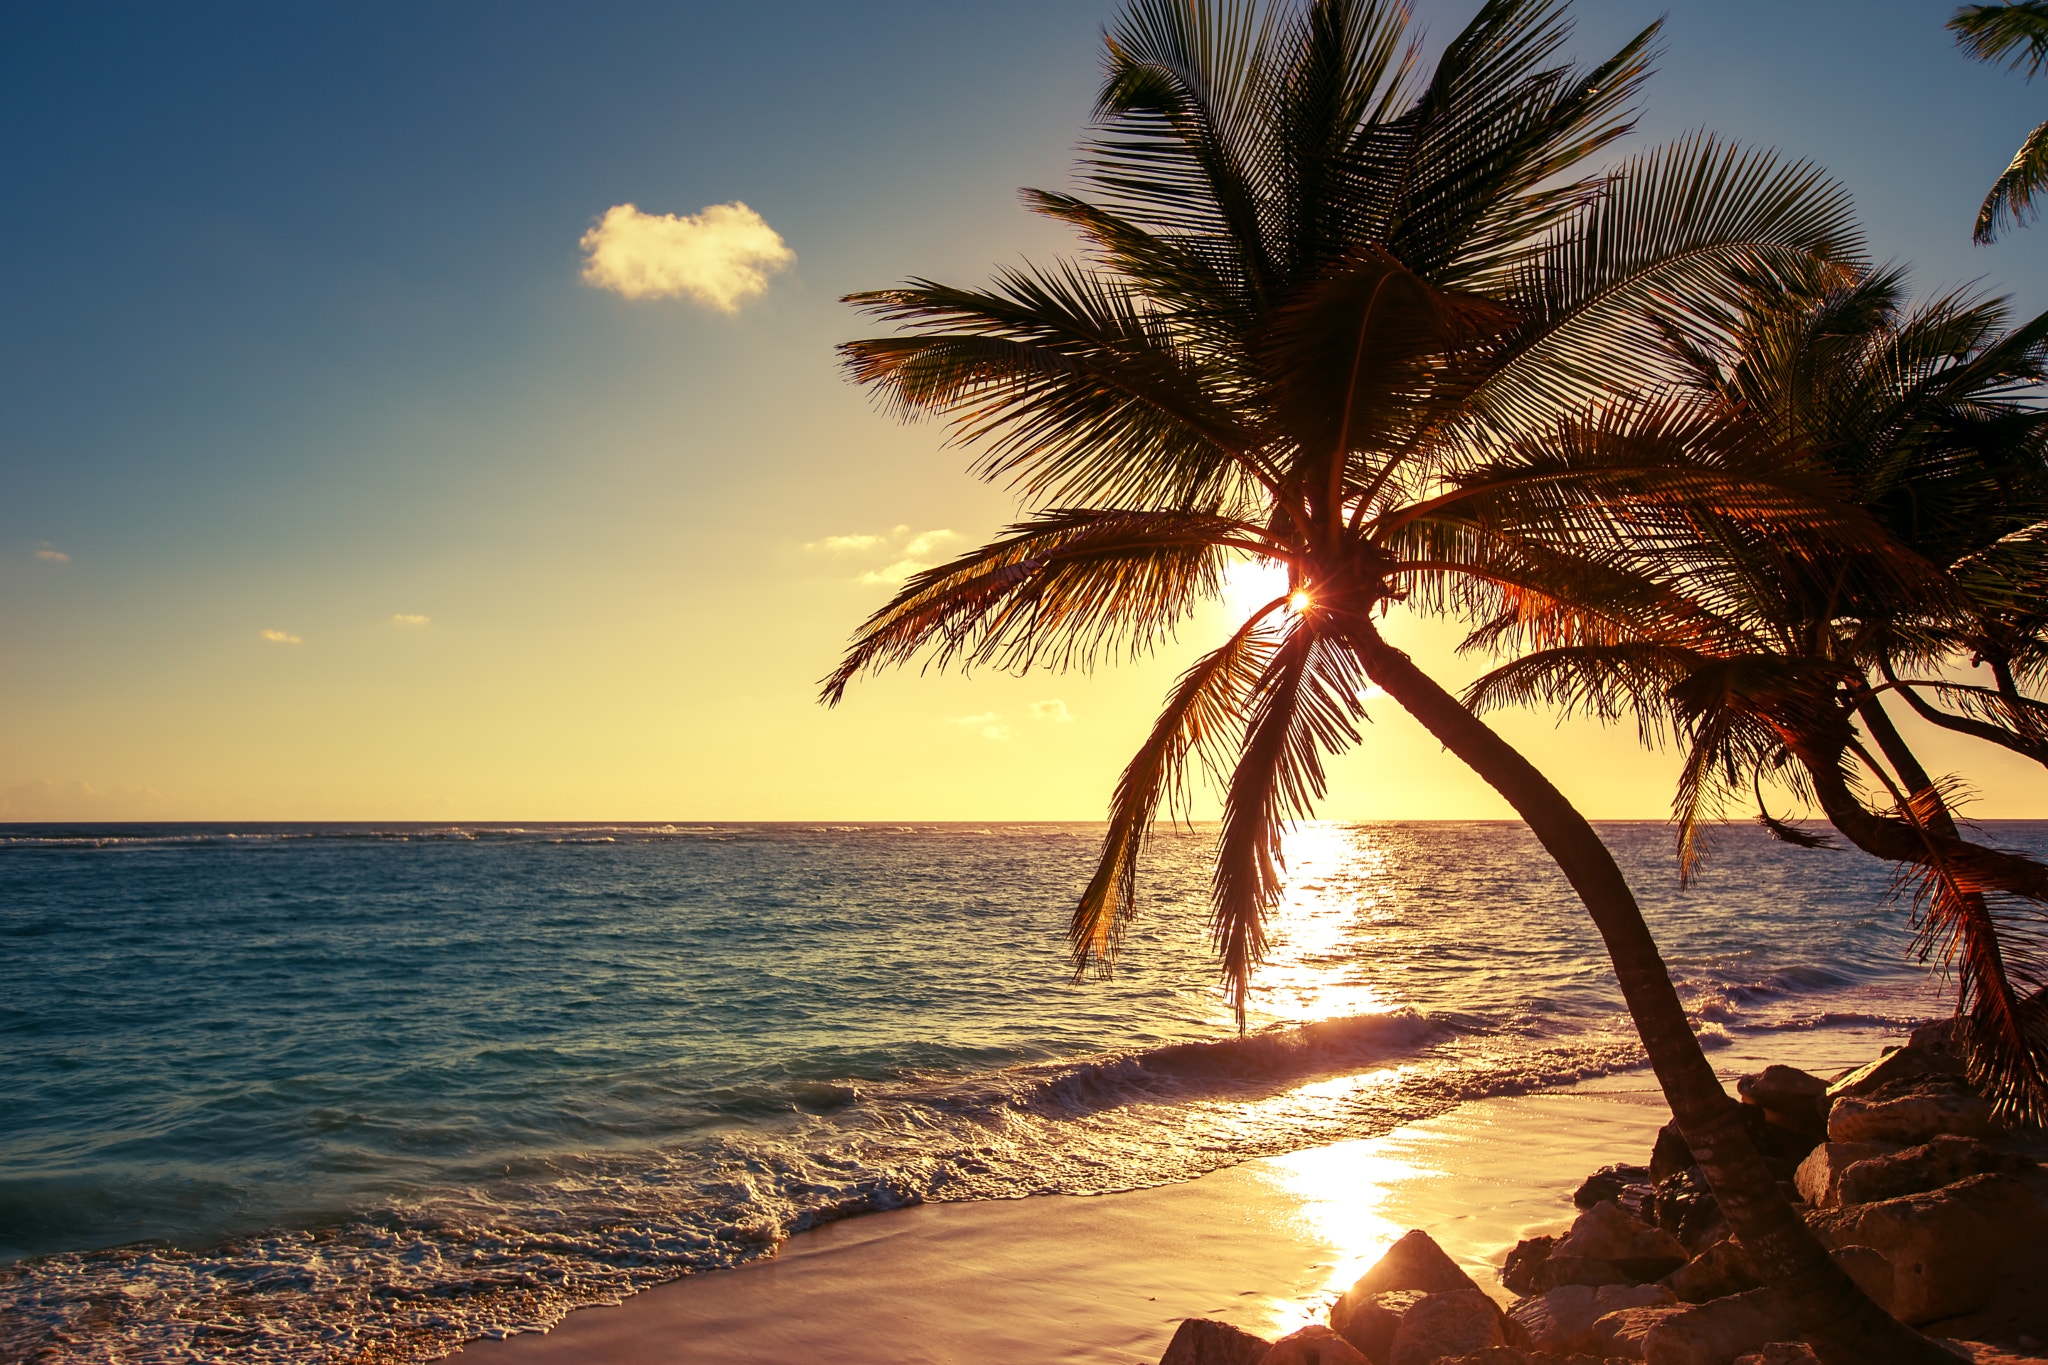 Обои Palm tree on the tropical beach sunrise shot Dominican Republic на рабочий стол